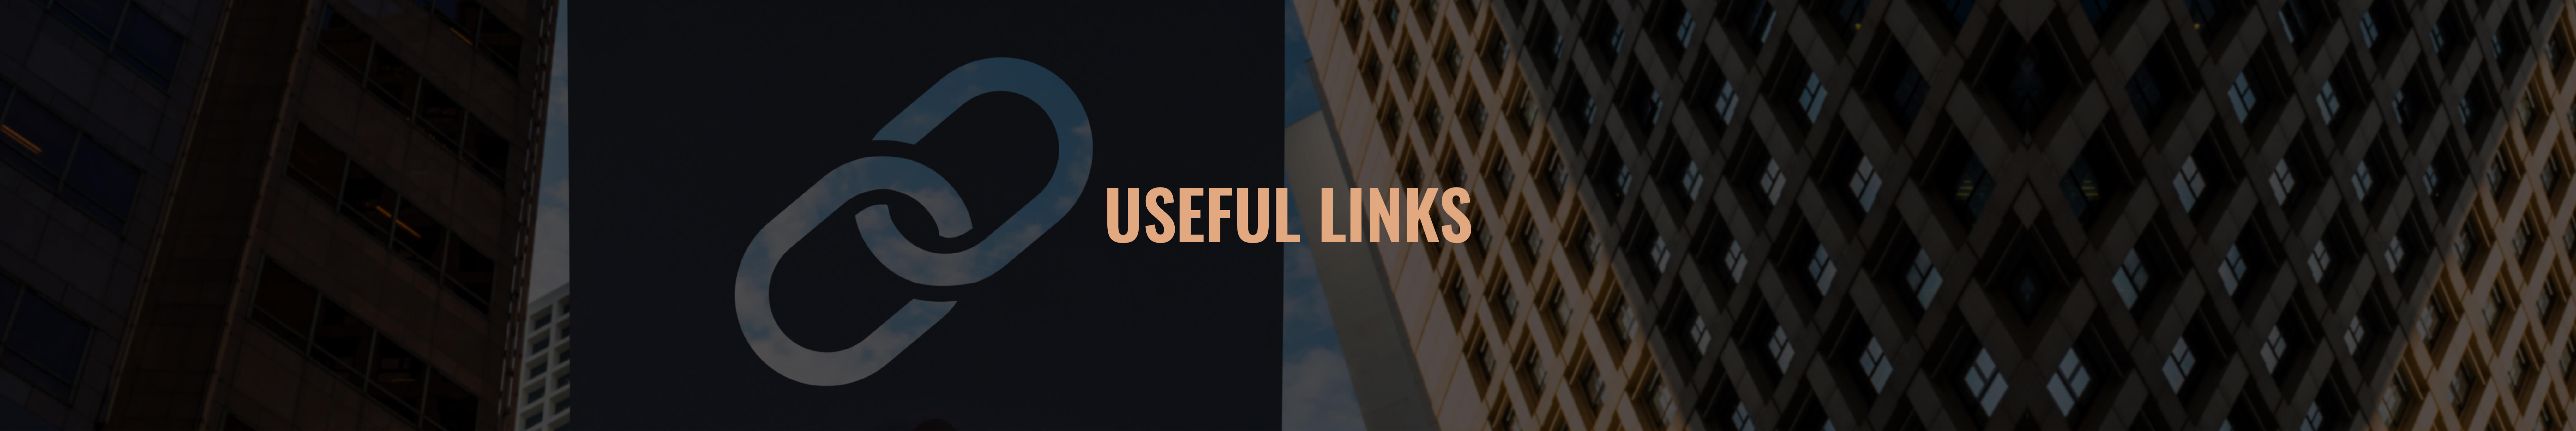 Useful Links
